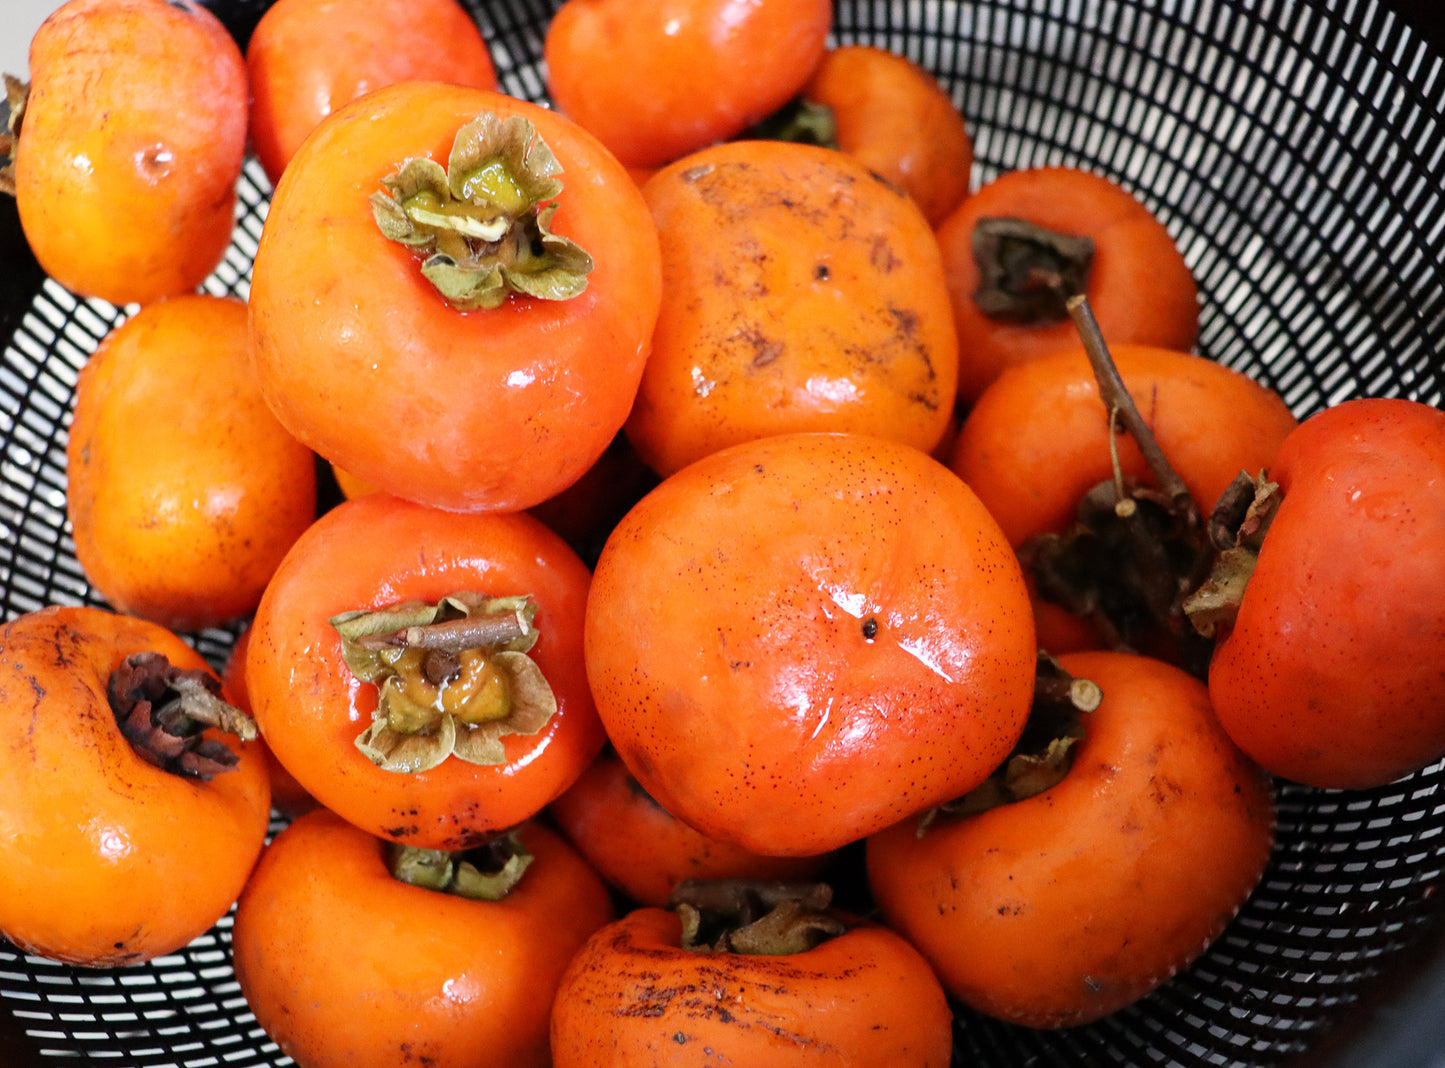 美味しいのに収穫できず熊に狙われていた秋保産の柿を集めて作った甘〜いスライス干し柿 ドライフルーツ・乾燥野菜 BLUE BLUEBERRY FARM   